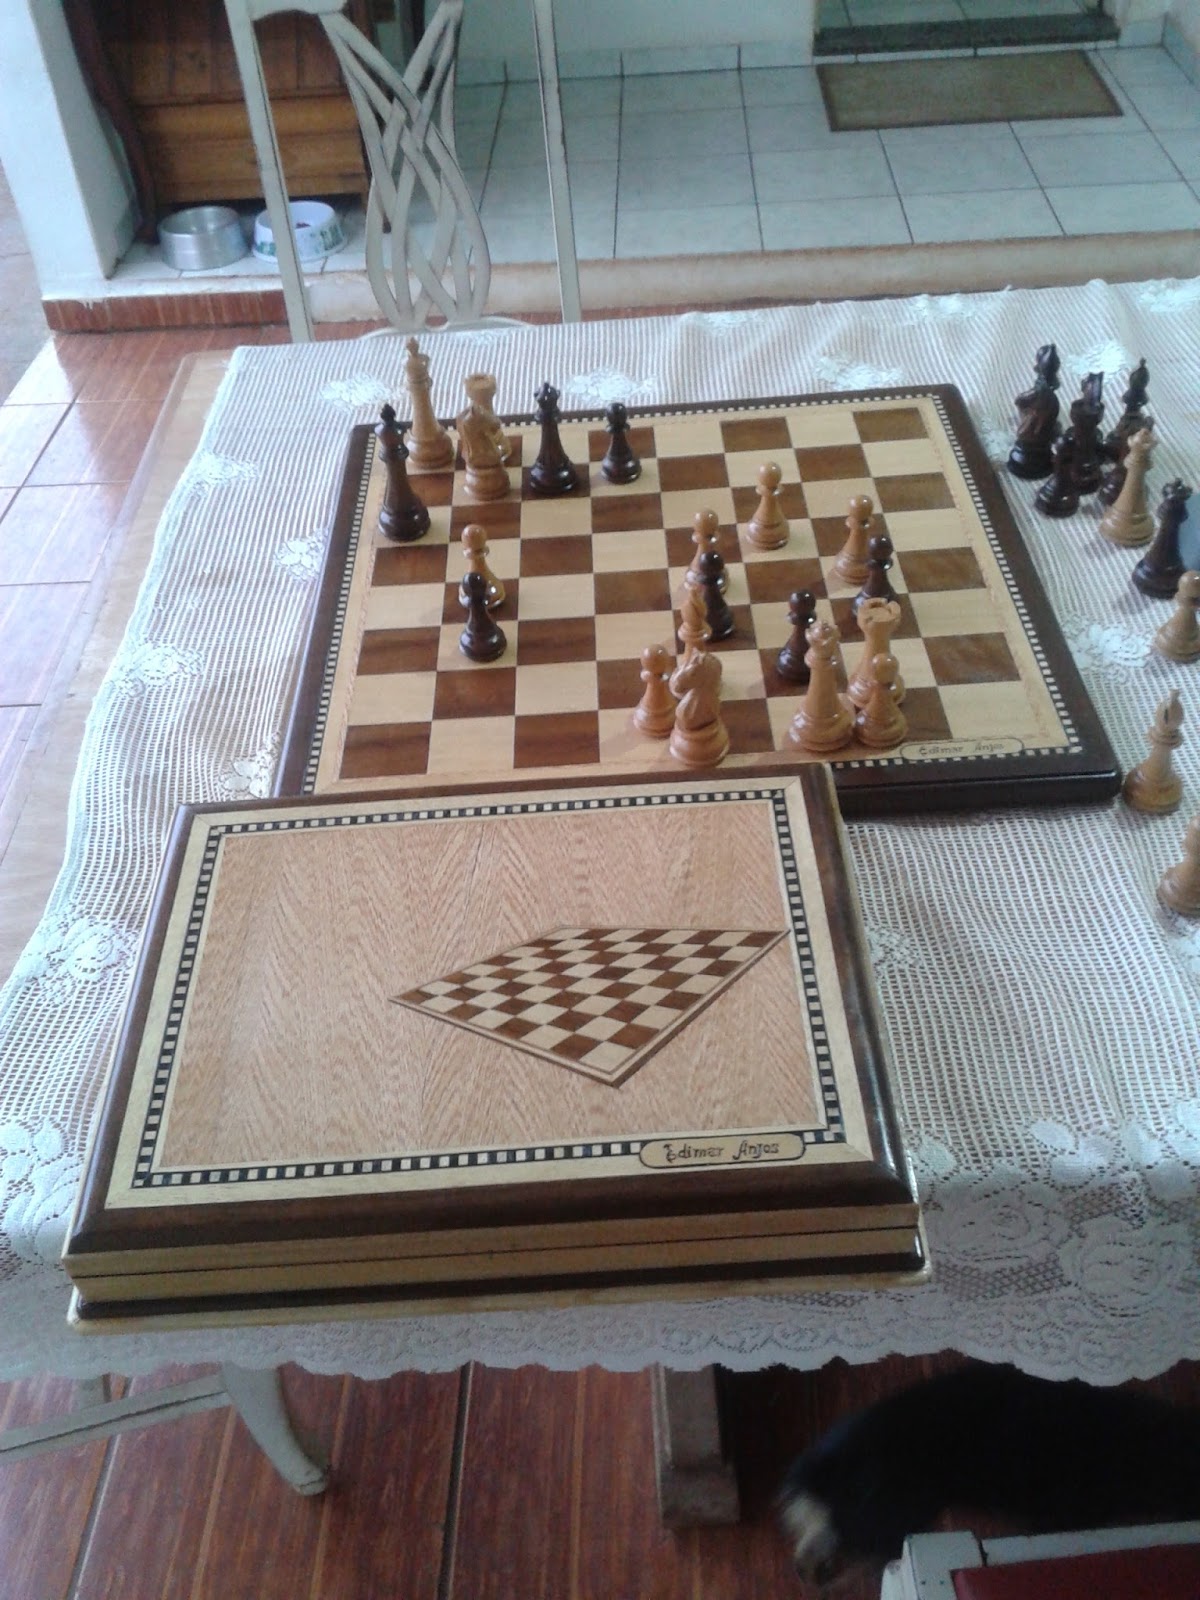 Tática é saber o que fazer lição de xadrez conceito de estratégia jogar  xadrez passatempo intelectual